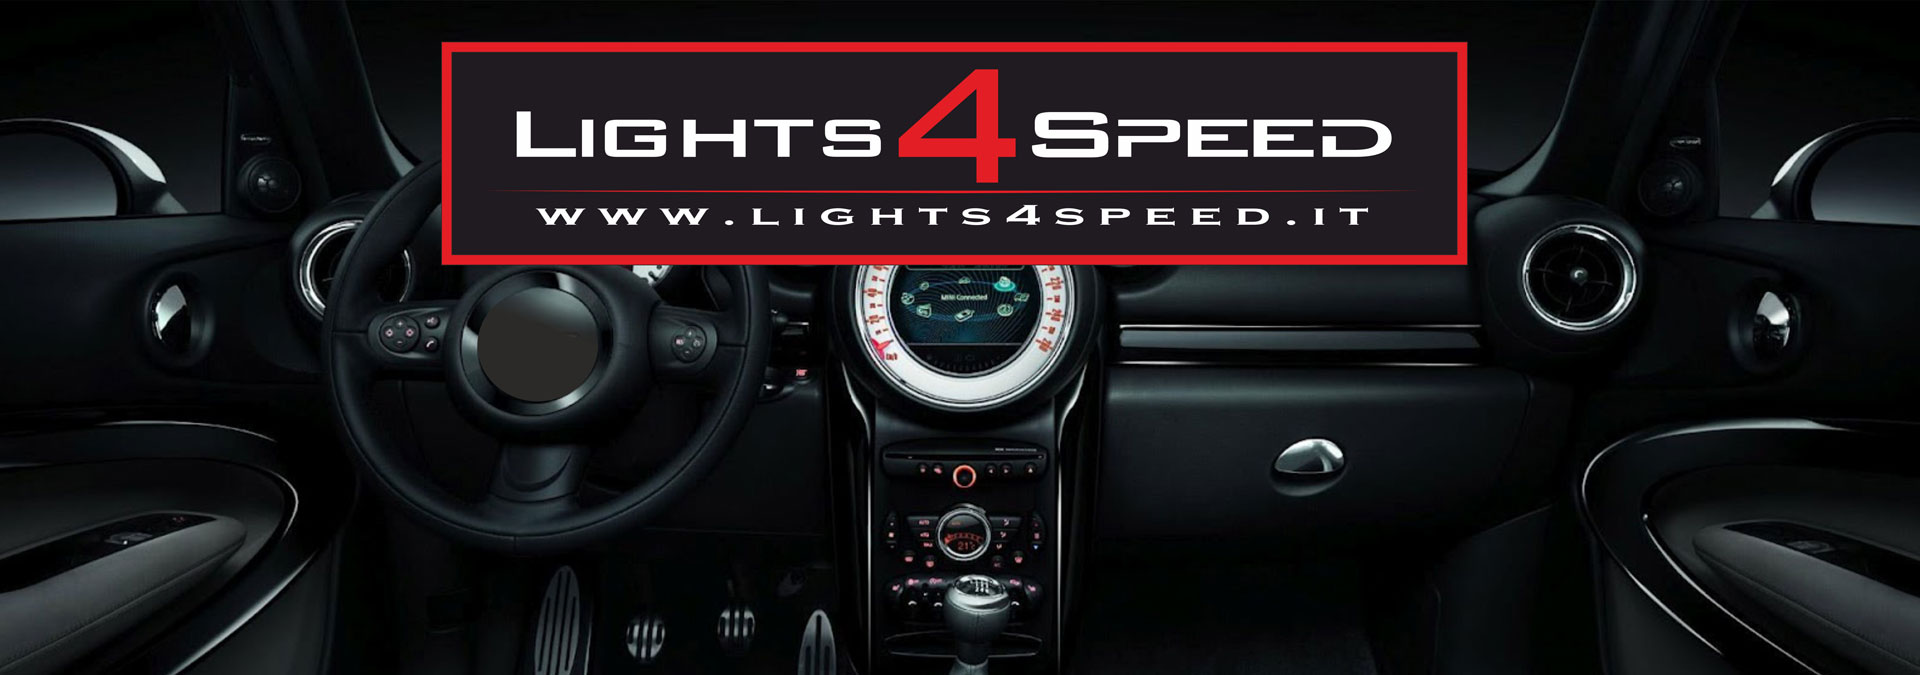 Lights 4 Speed